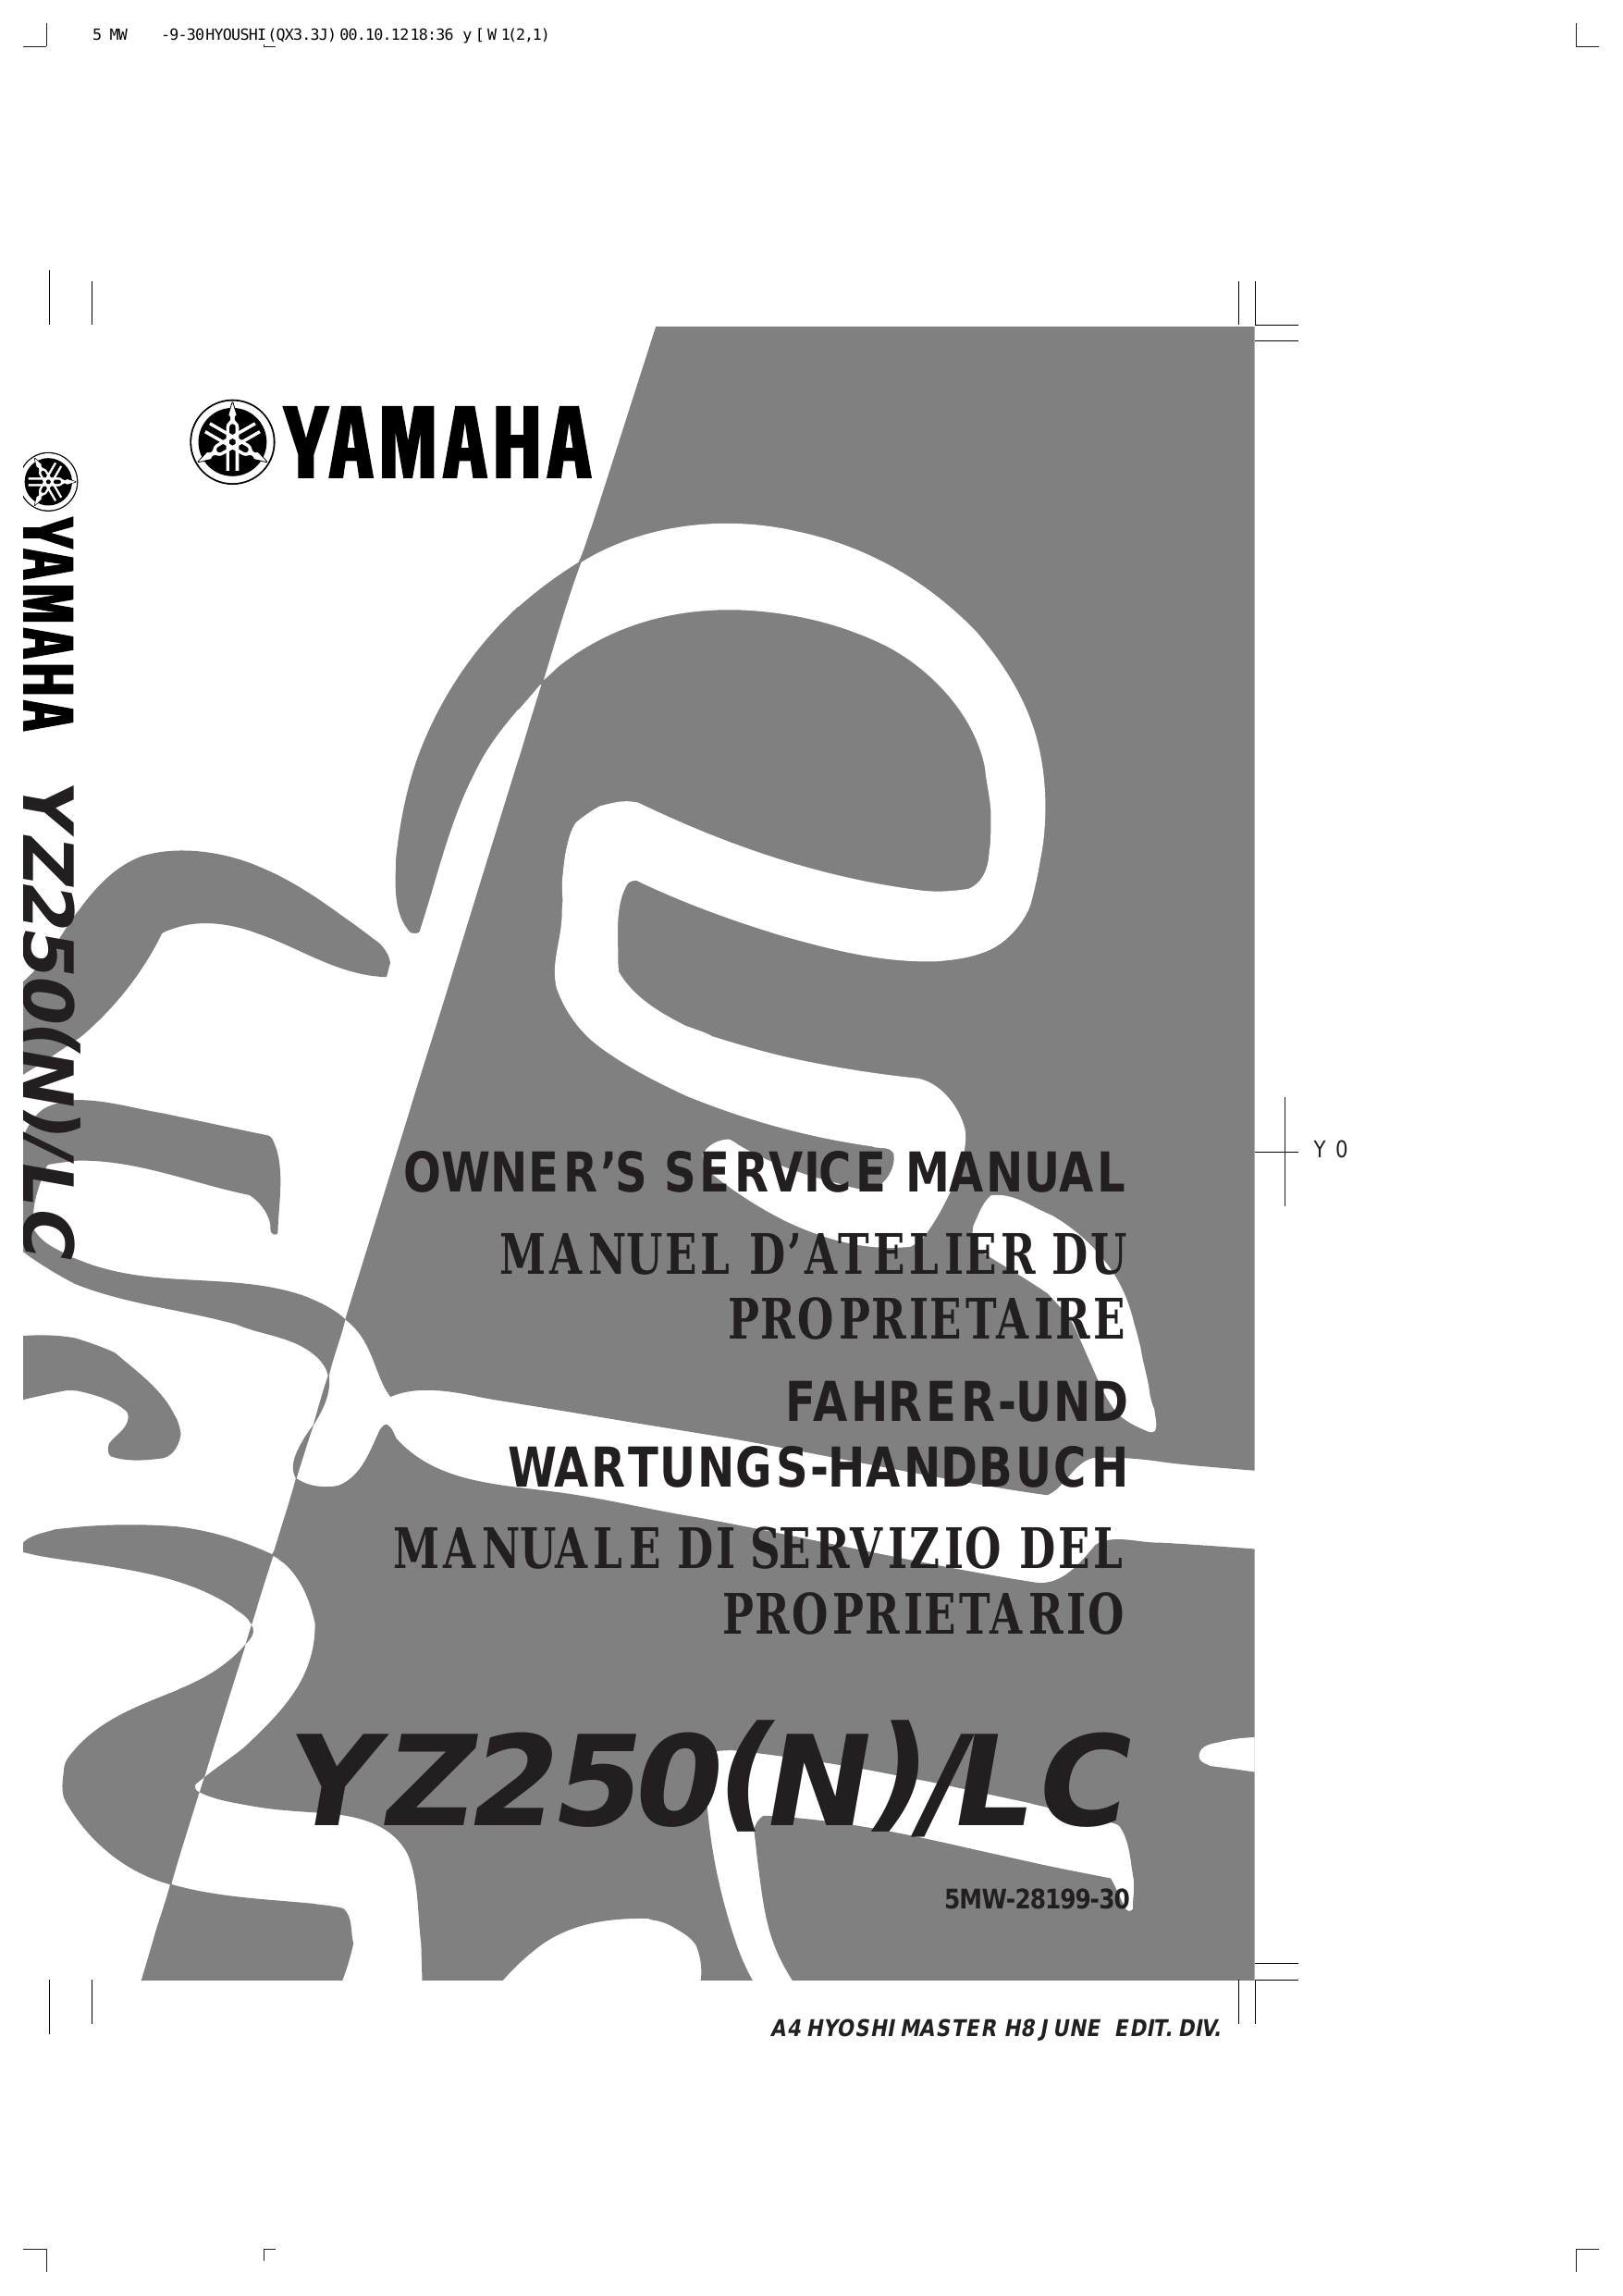 2001-2006 Yamaha YZ250 repair manual Preview image 1